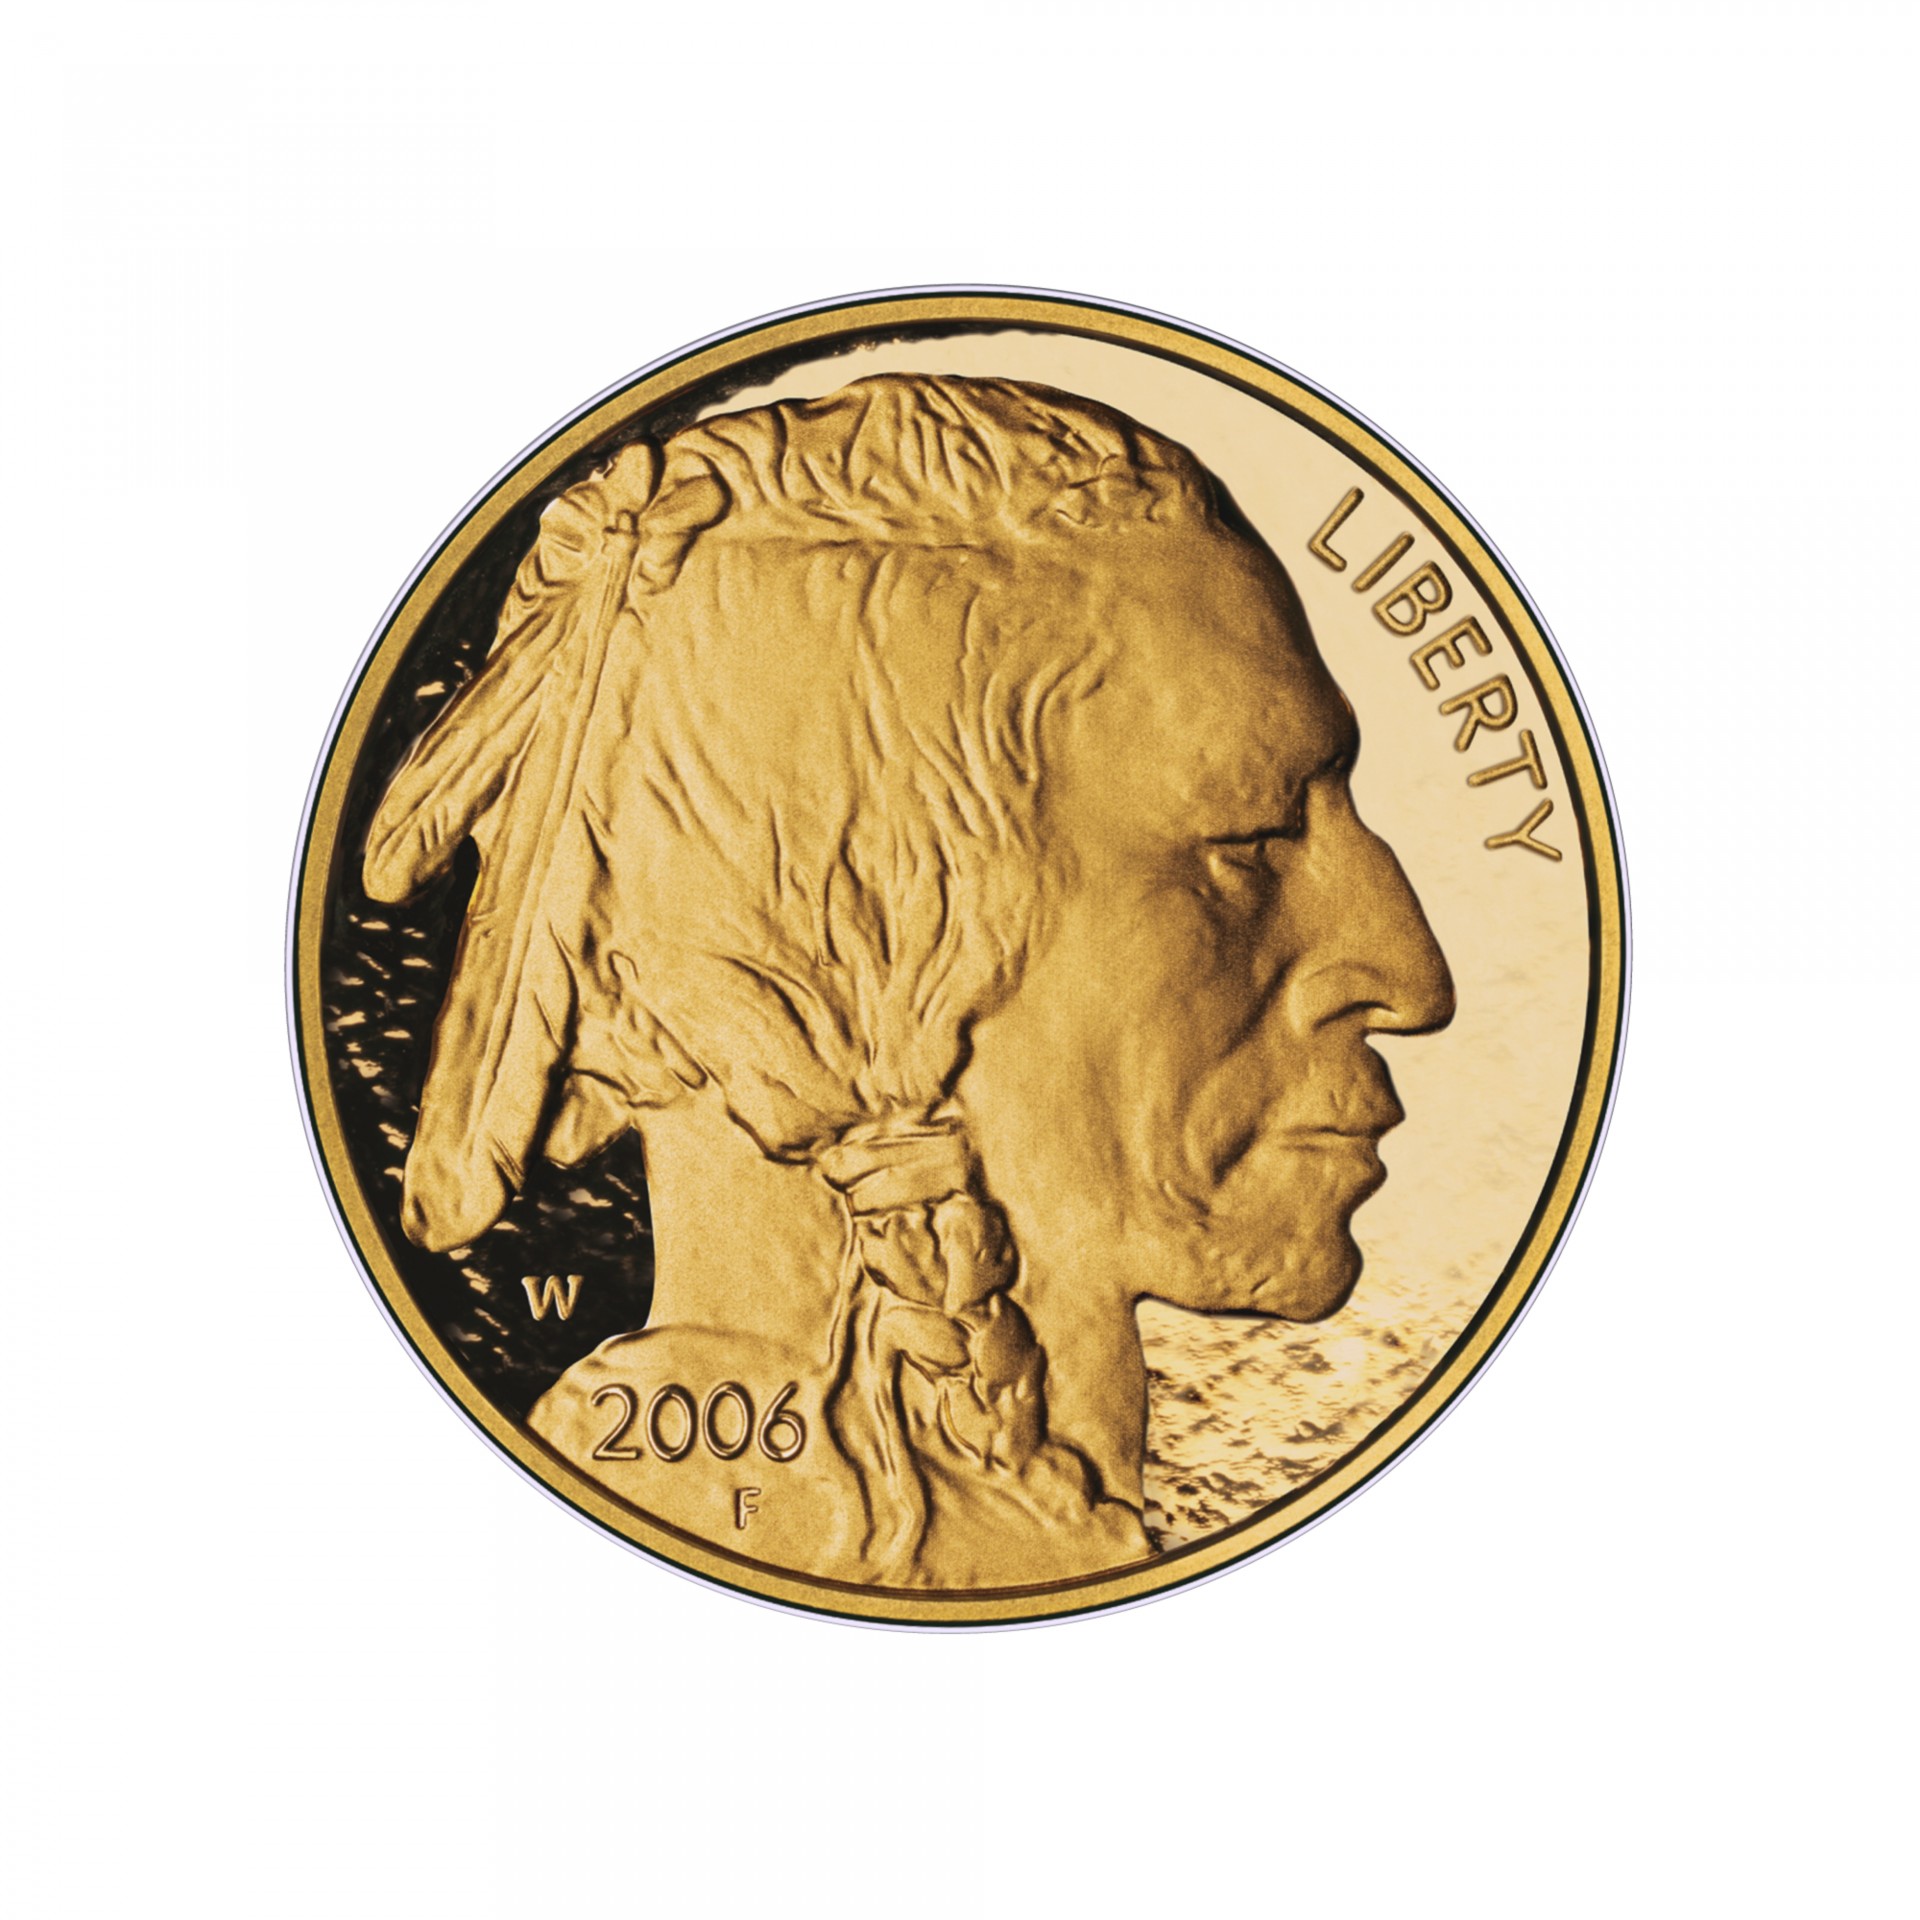 American Buffalo Coin